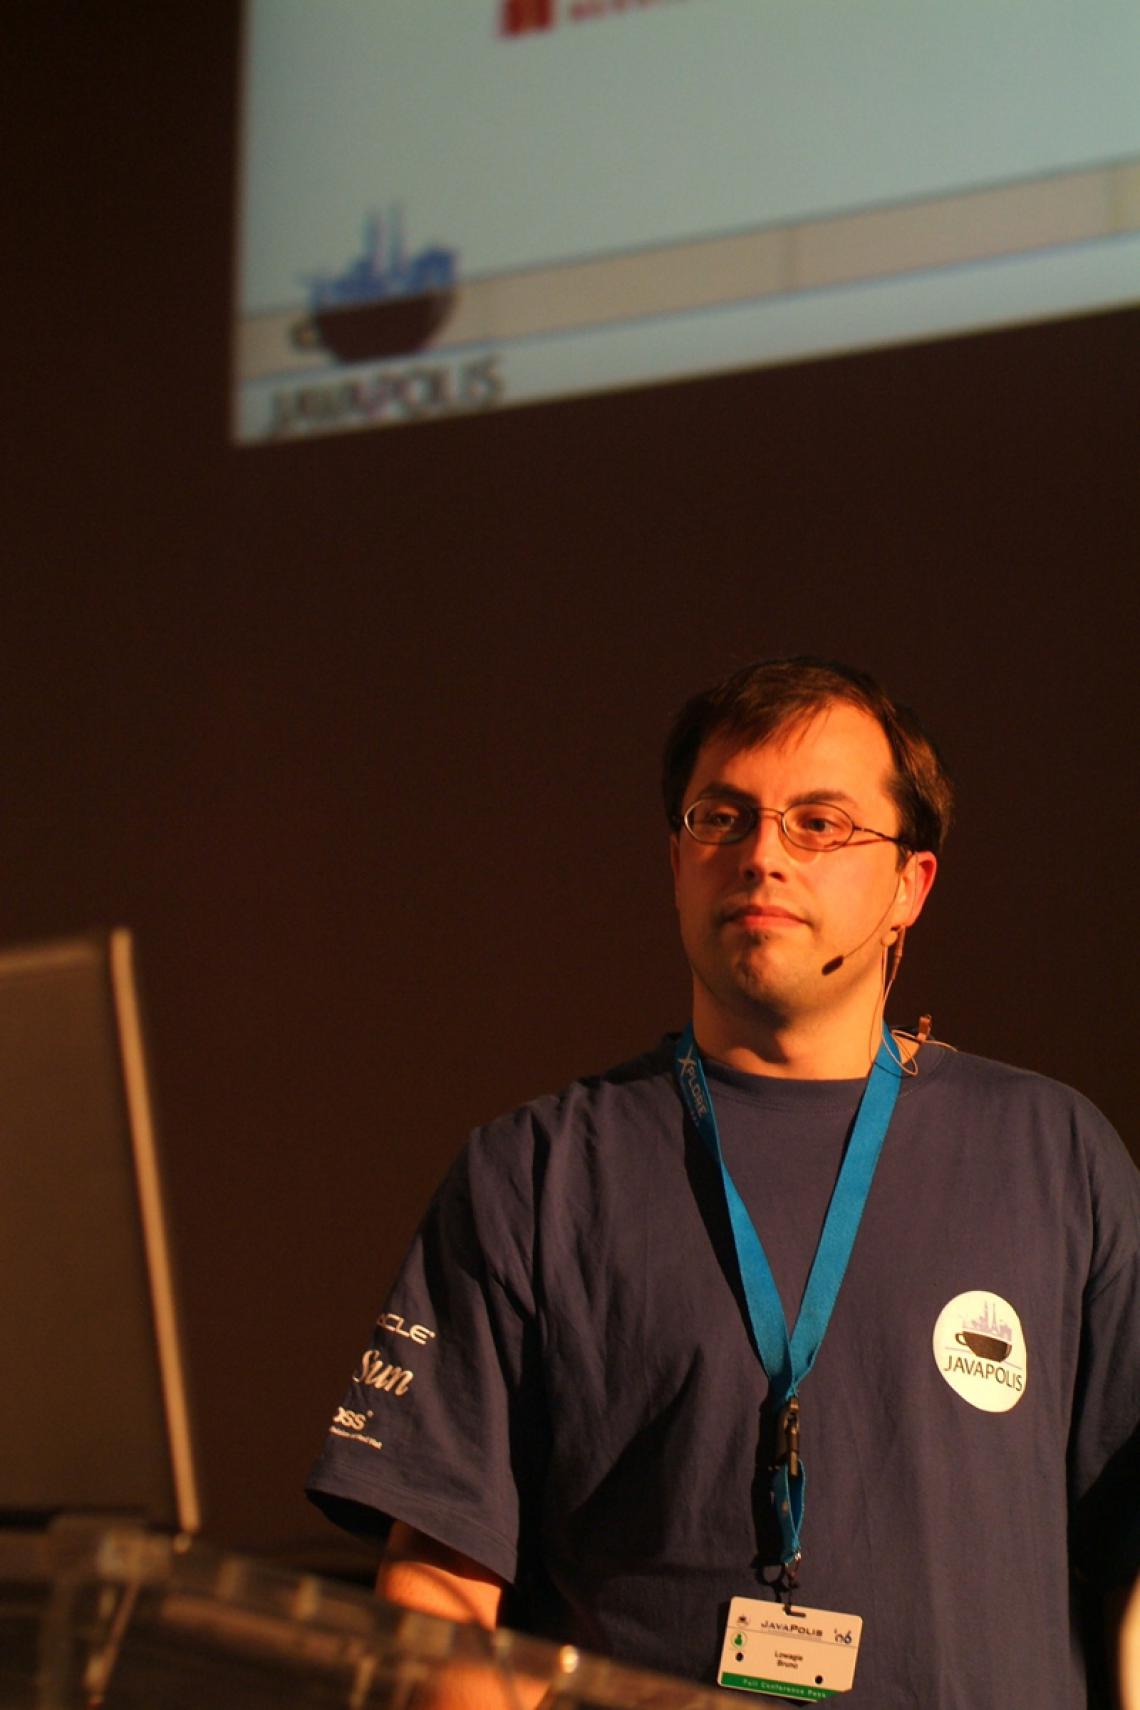 Bruno presenting iText at Javapolis in Antwerp